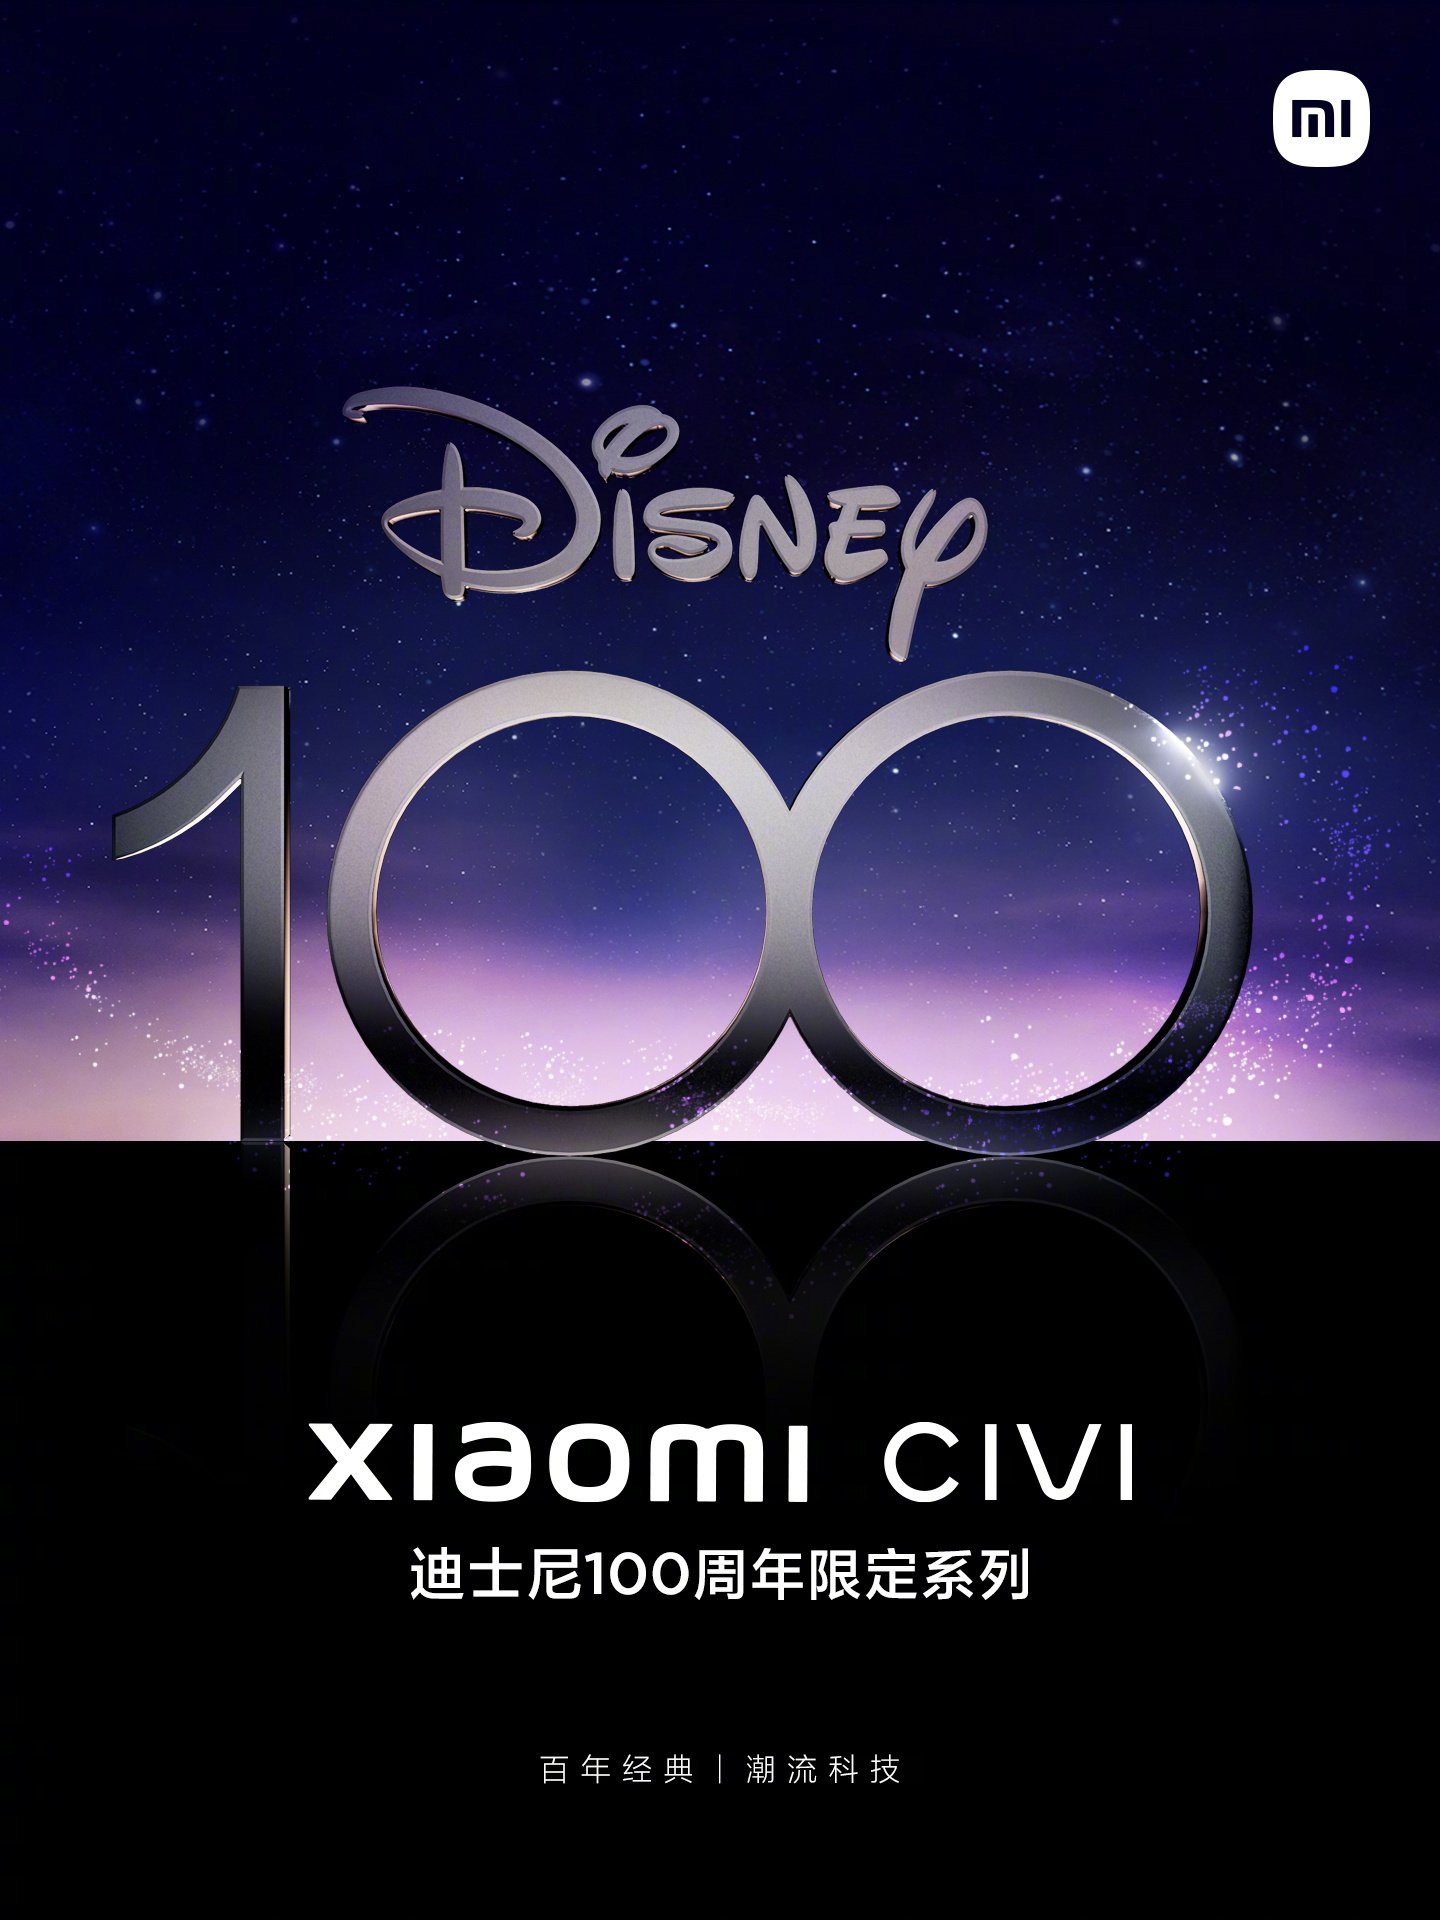 Xiaomi e Disney fazem parceria para lançar edição especial de celular -  TecMundo